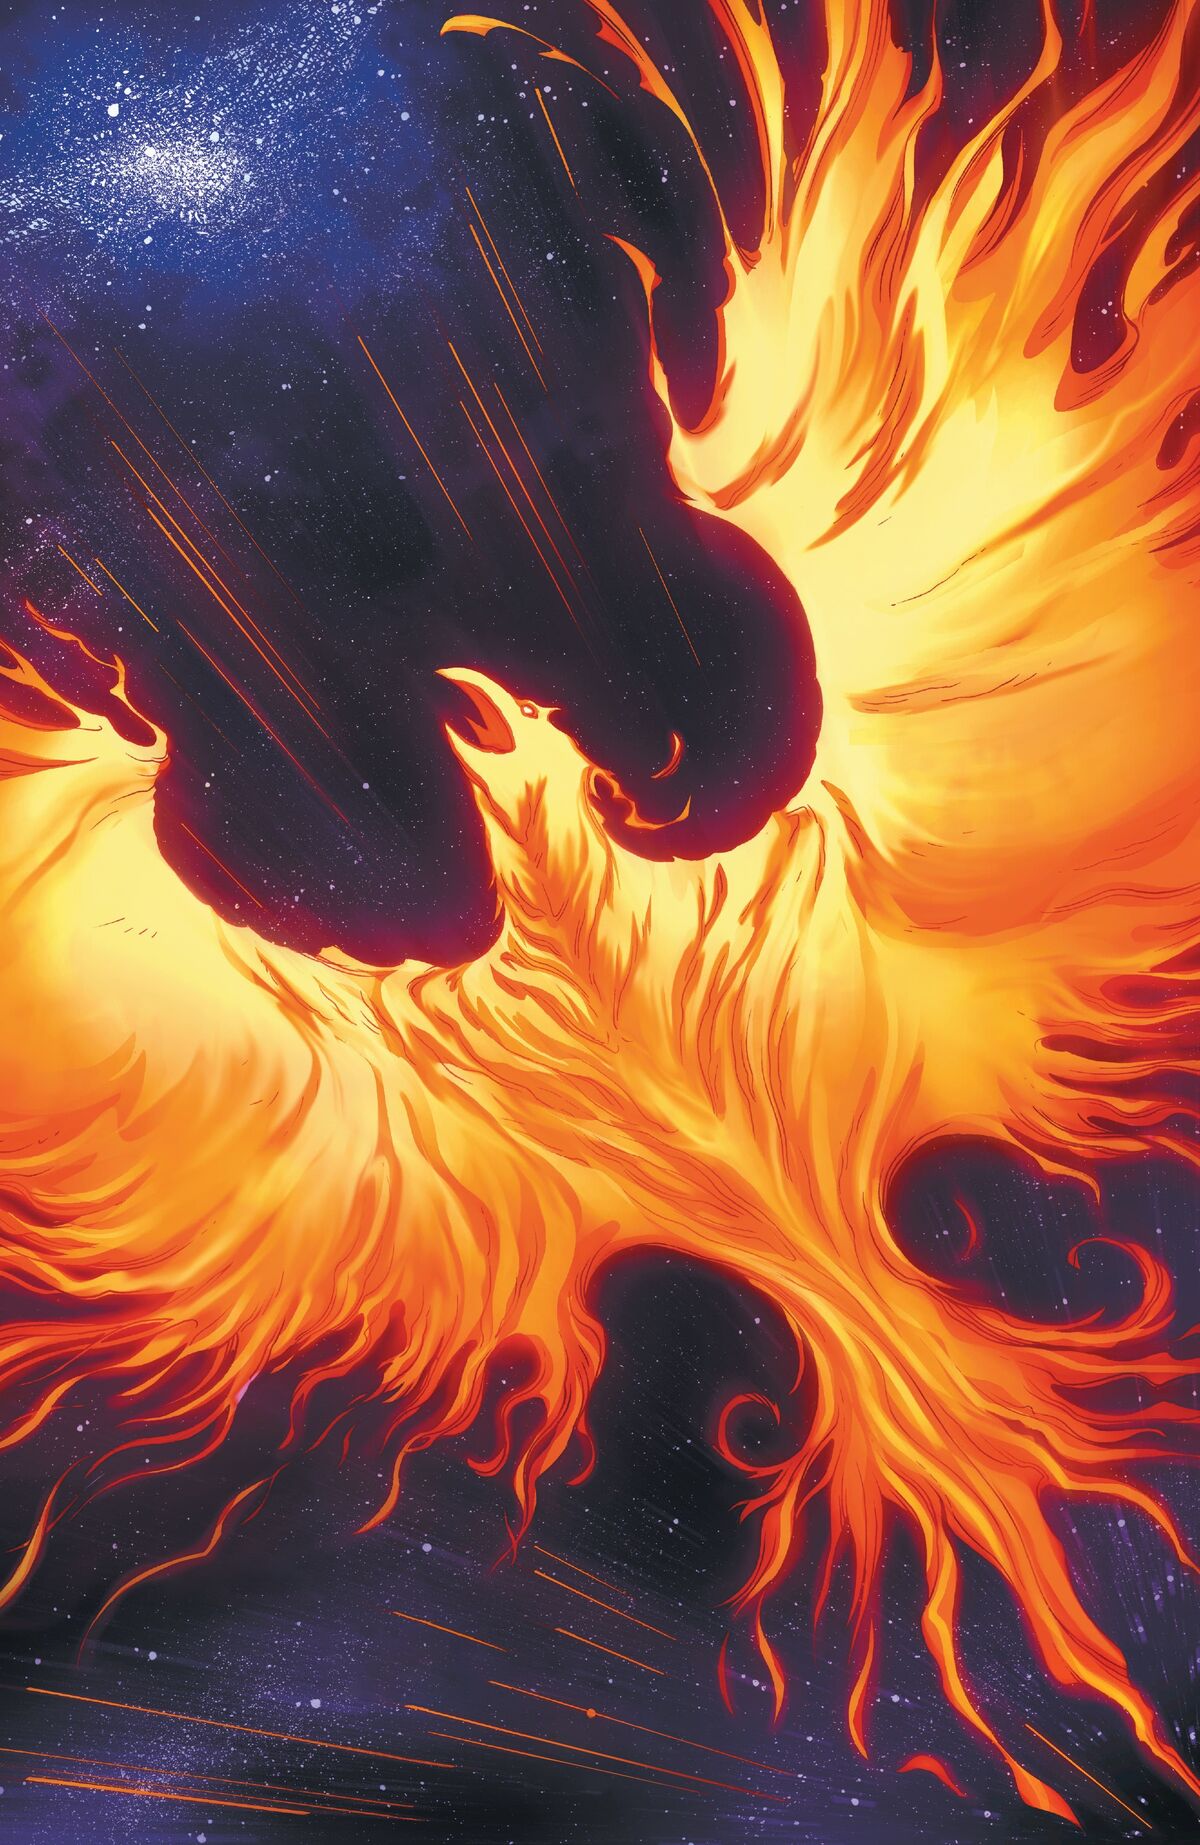 marvel phoenix symbol